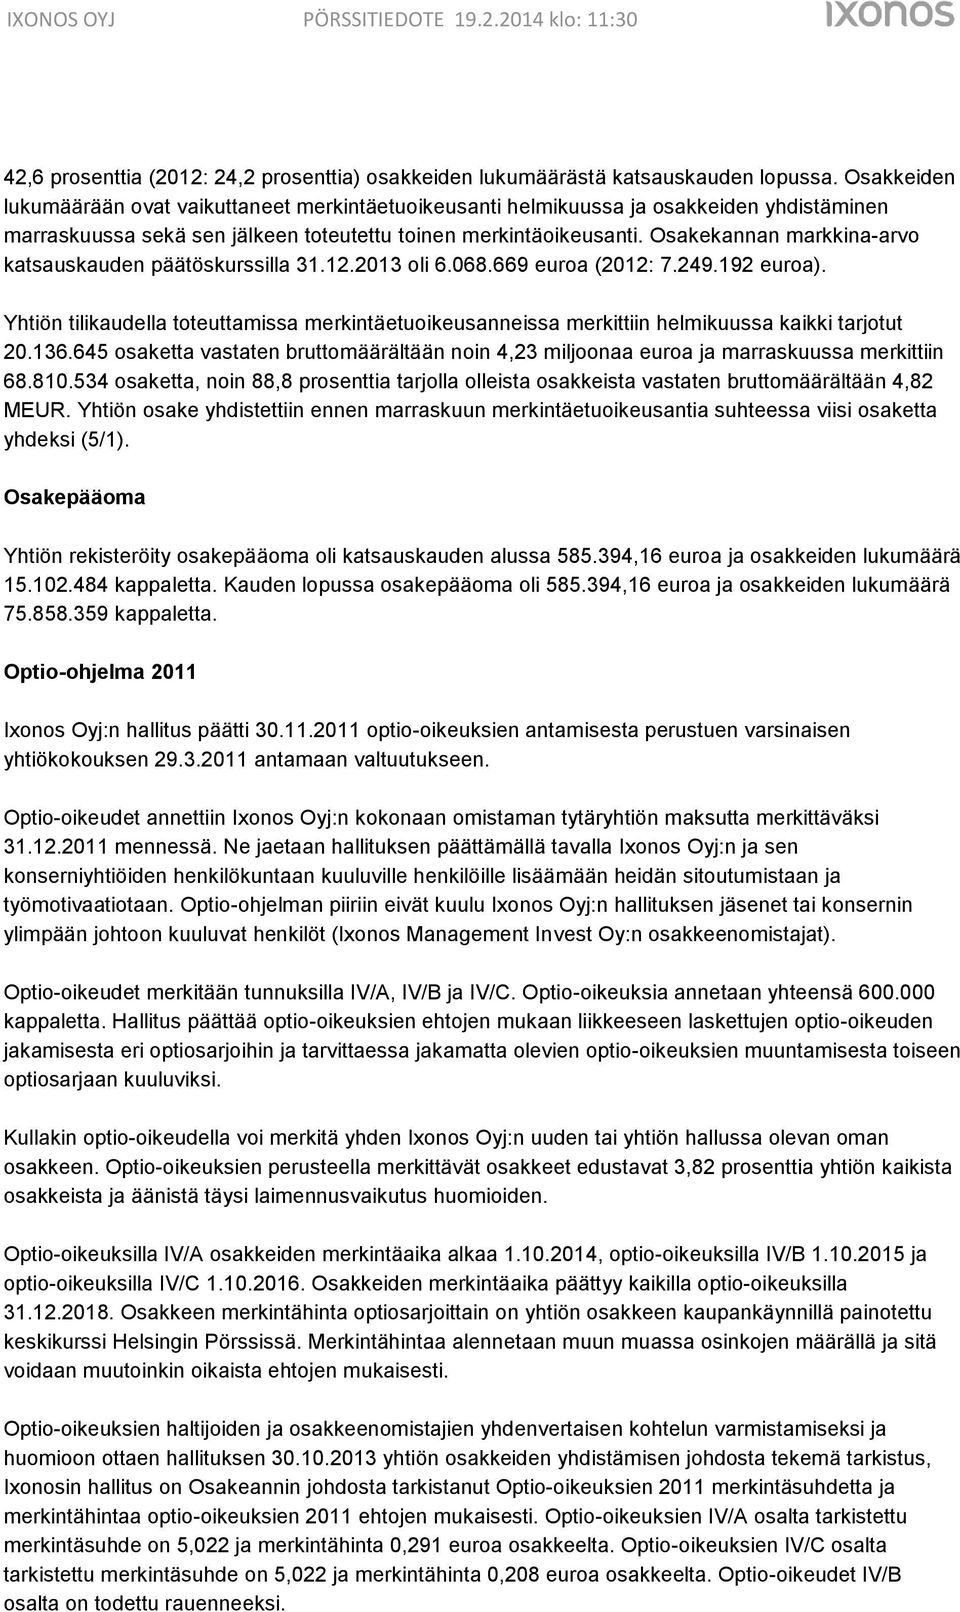 Osakekannan markkina-arvo katsauskauden päätöskurssilla 31.12.2013 oli 6.068.669 euroa (2012: 7.249.192 euroa).